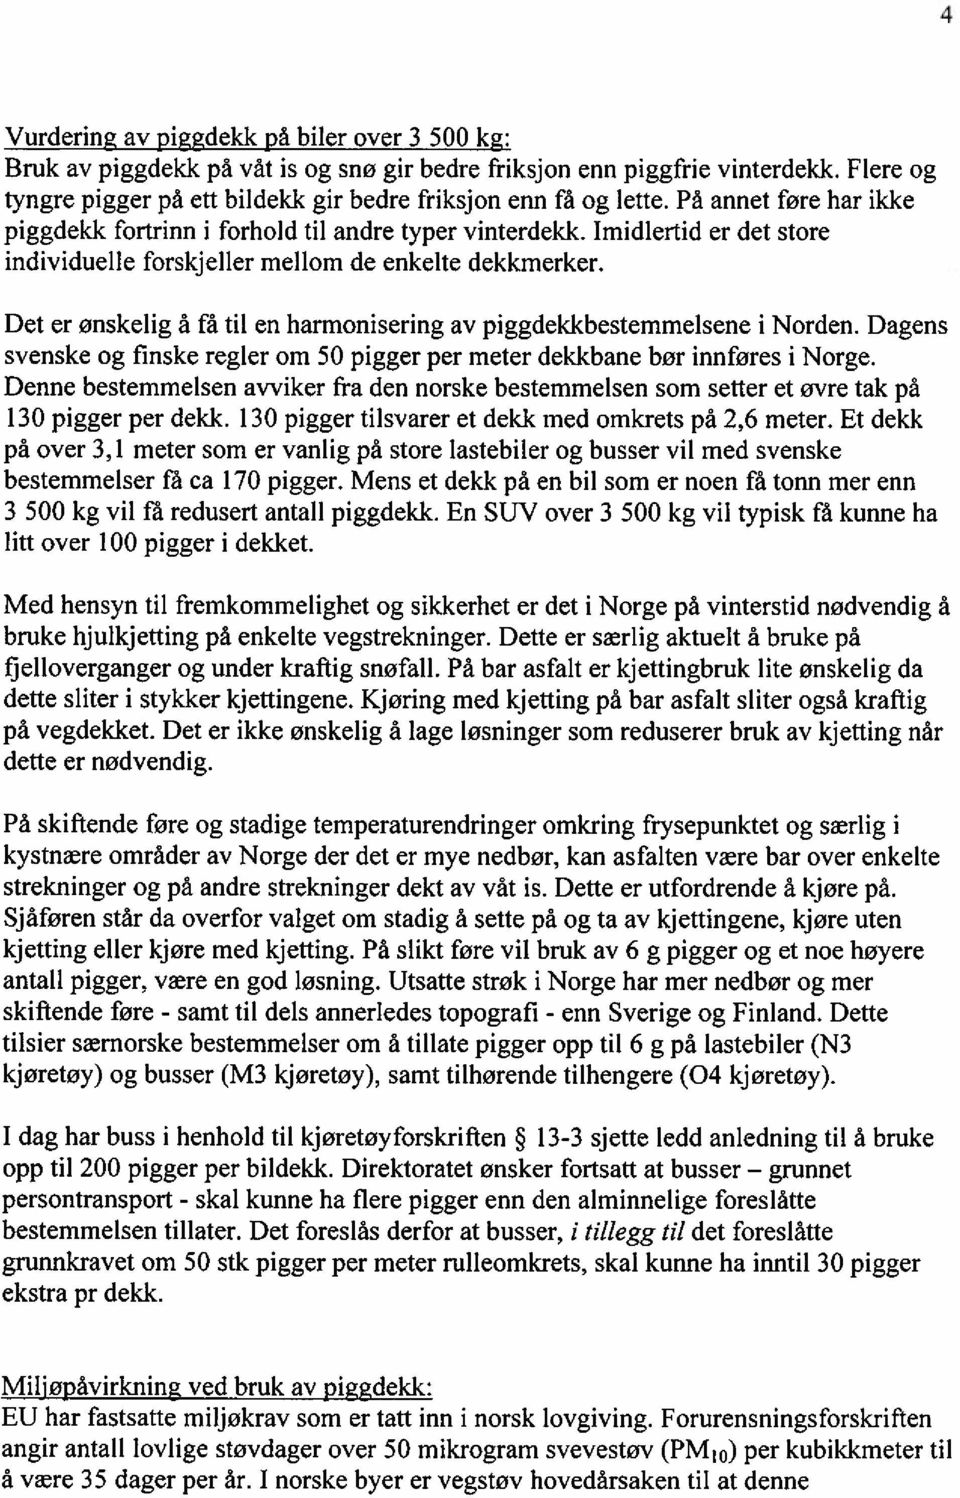 Det er ønskelig å få til en harmonisering av piggdekkbestemmelsene i Norden. Dagens svenske og finske regler om 50 pigger per meter dekkbane bør innføres i Norge.